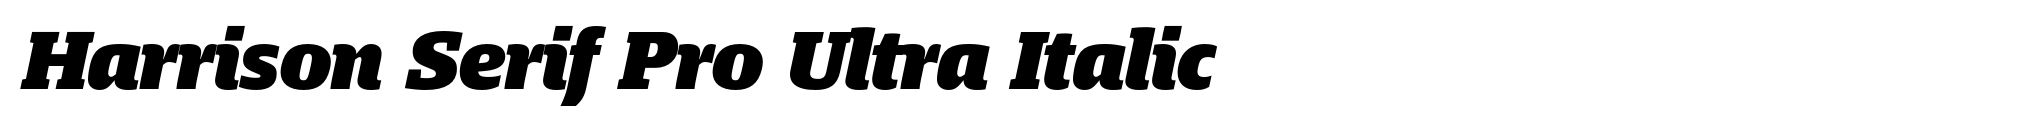 Harrison Serif Pro Ultra Italic image